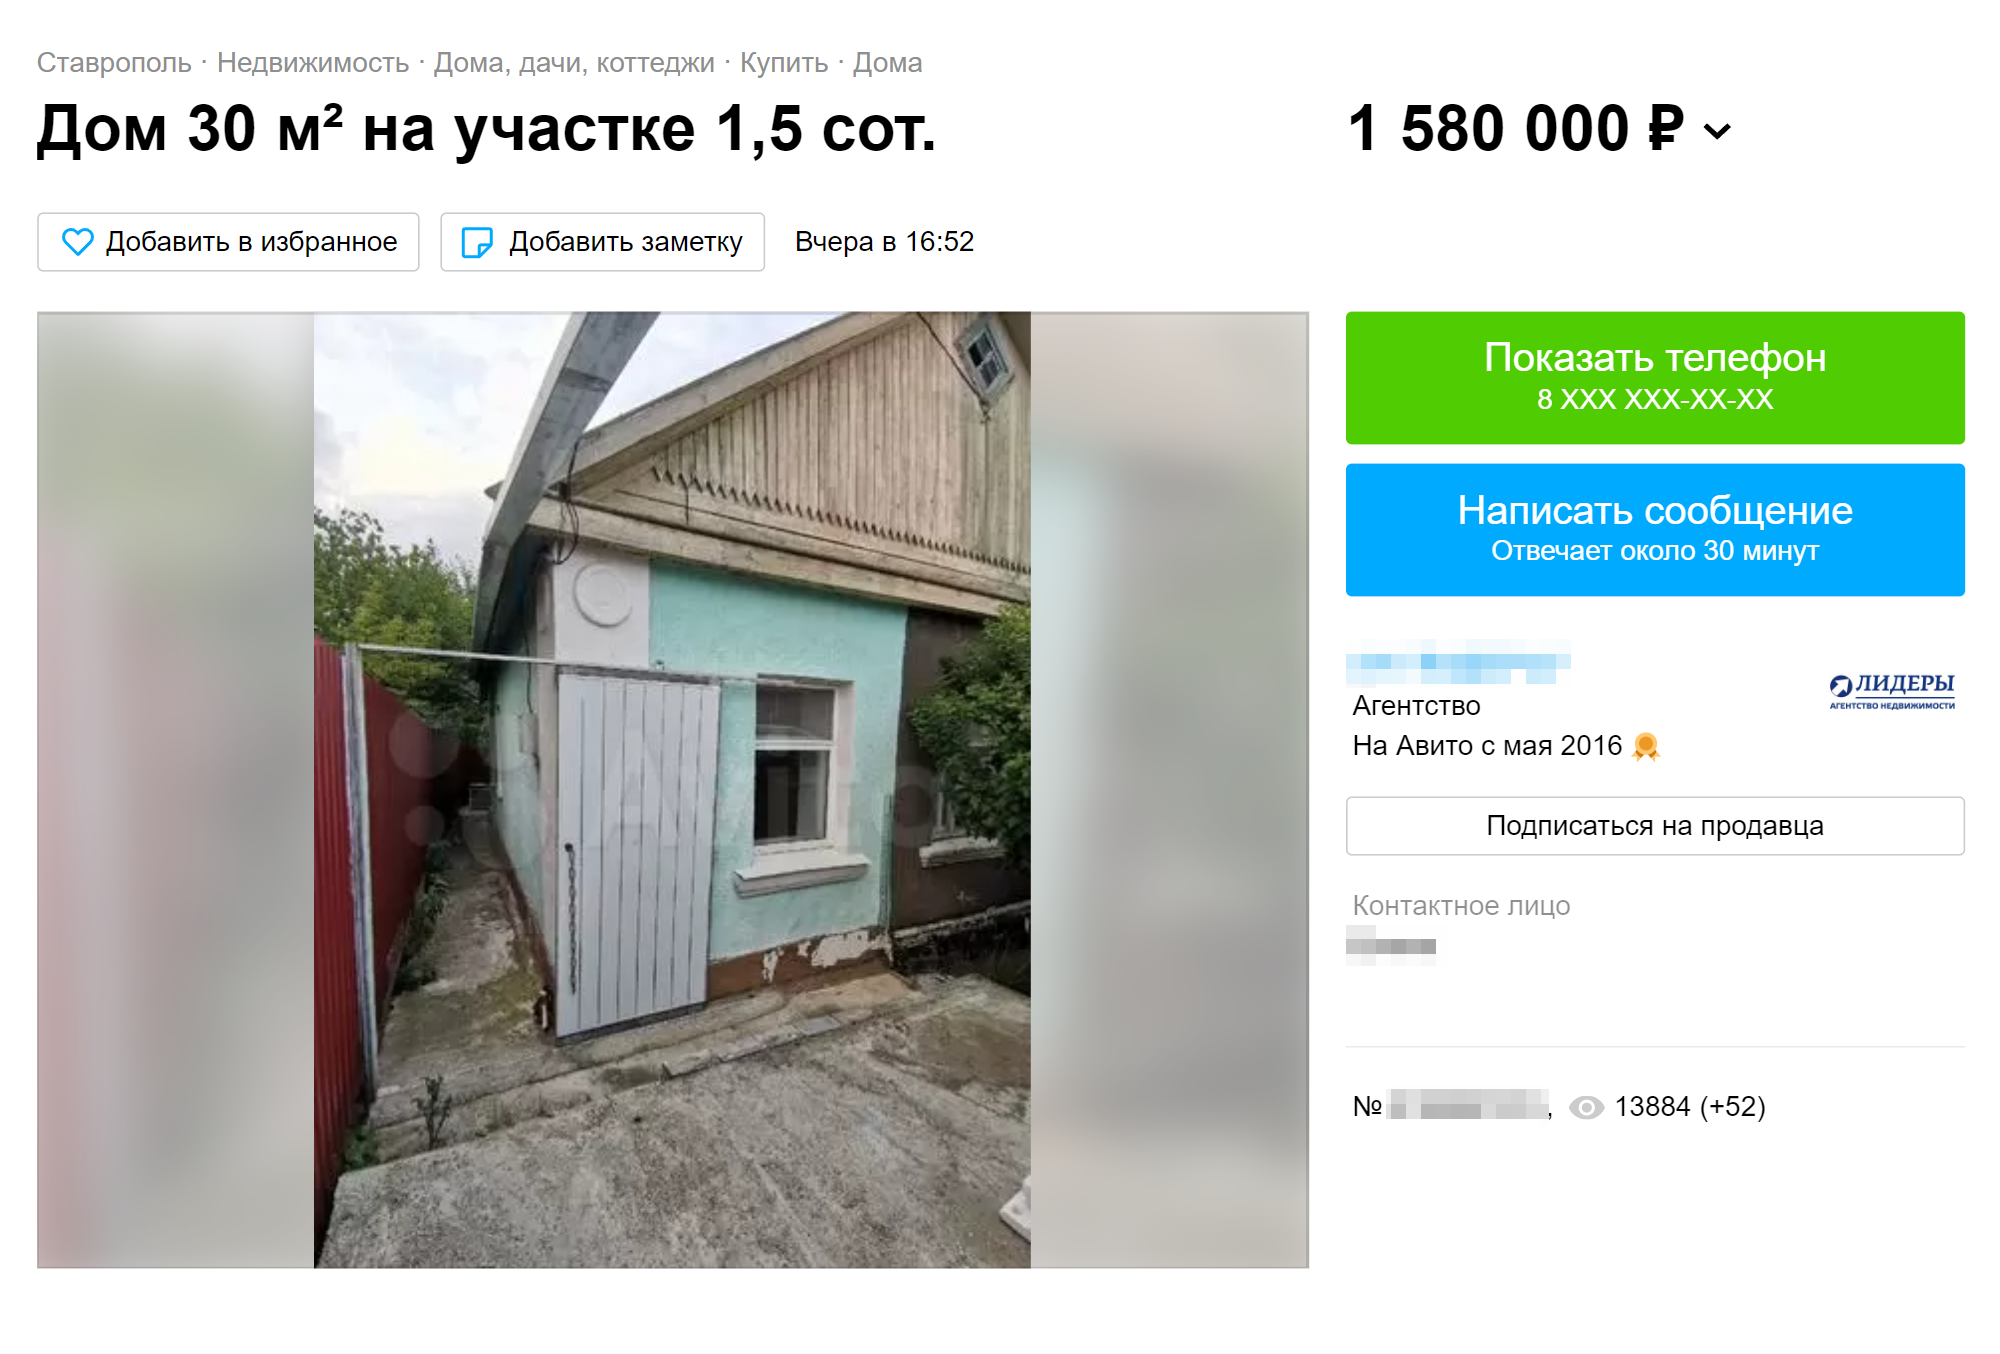 Половину дома в микрорайоне № 8 продают за 1,6 млн рублей